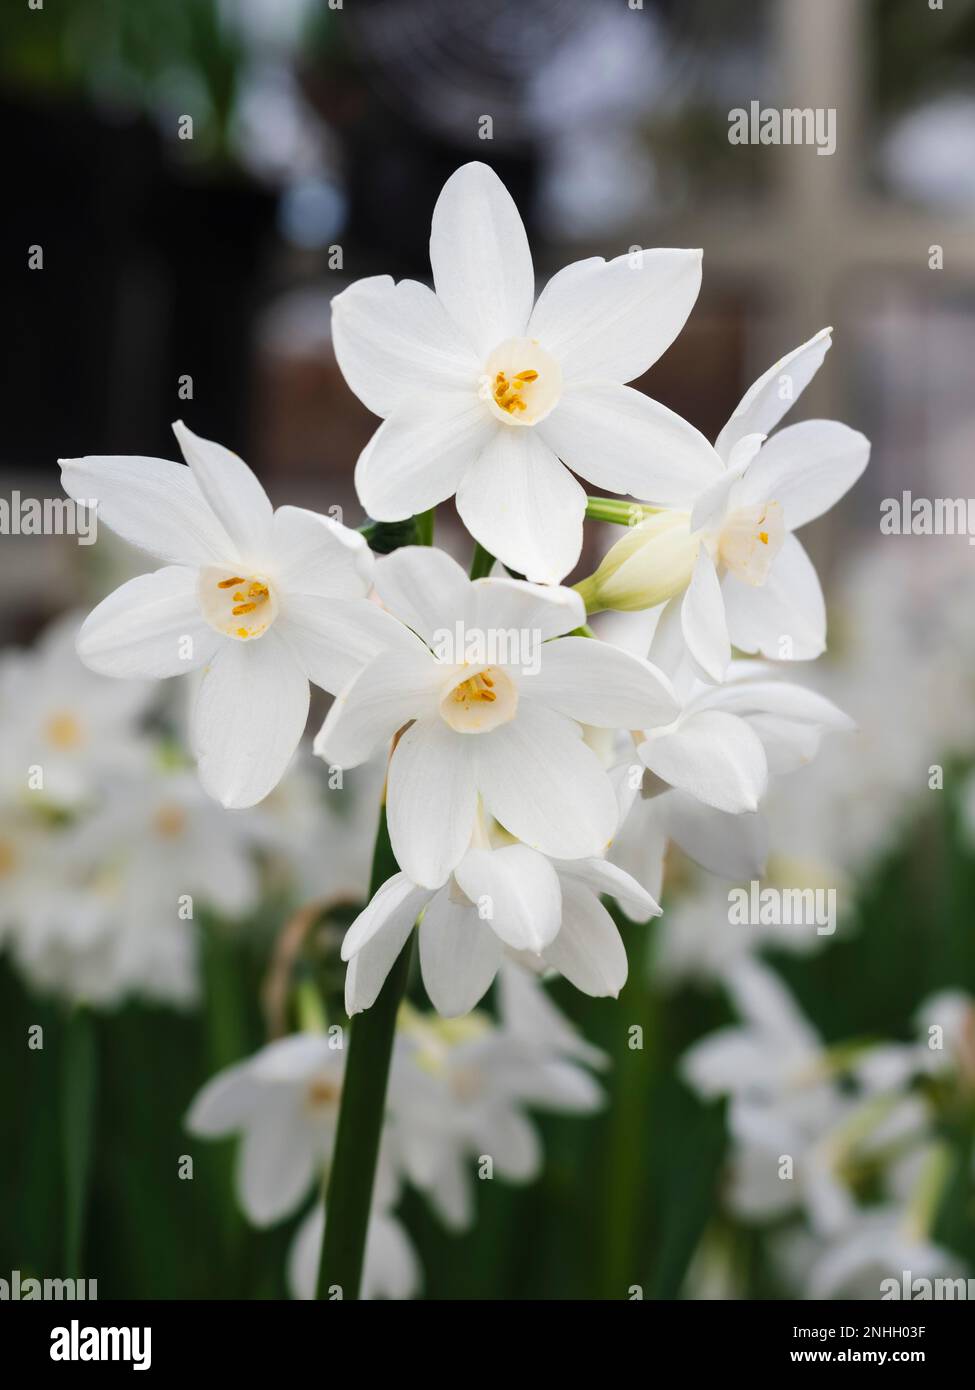 Pure white flowers of the multi headed tender winter flowering fragrant bulb, Narcissus tazetta 'Paperwhite Ziva' Stock Photo